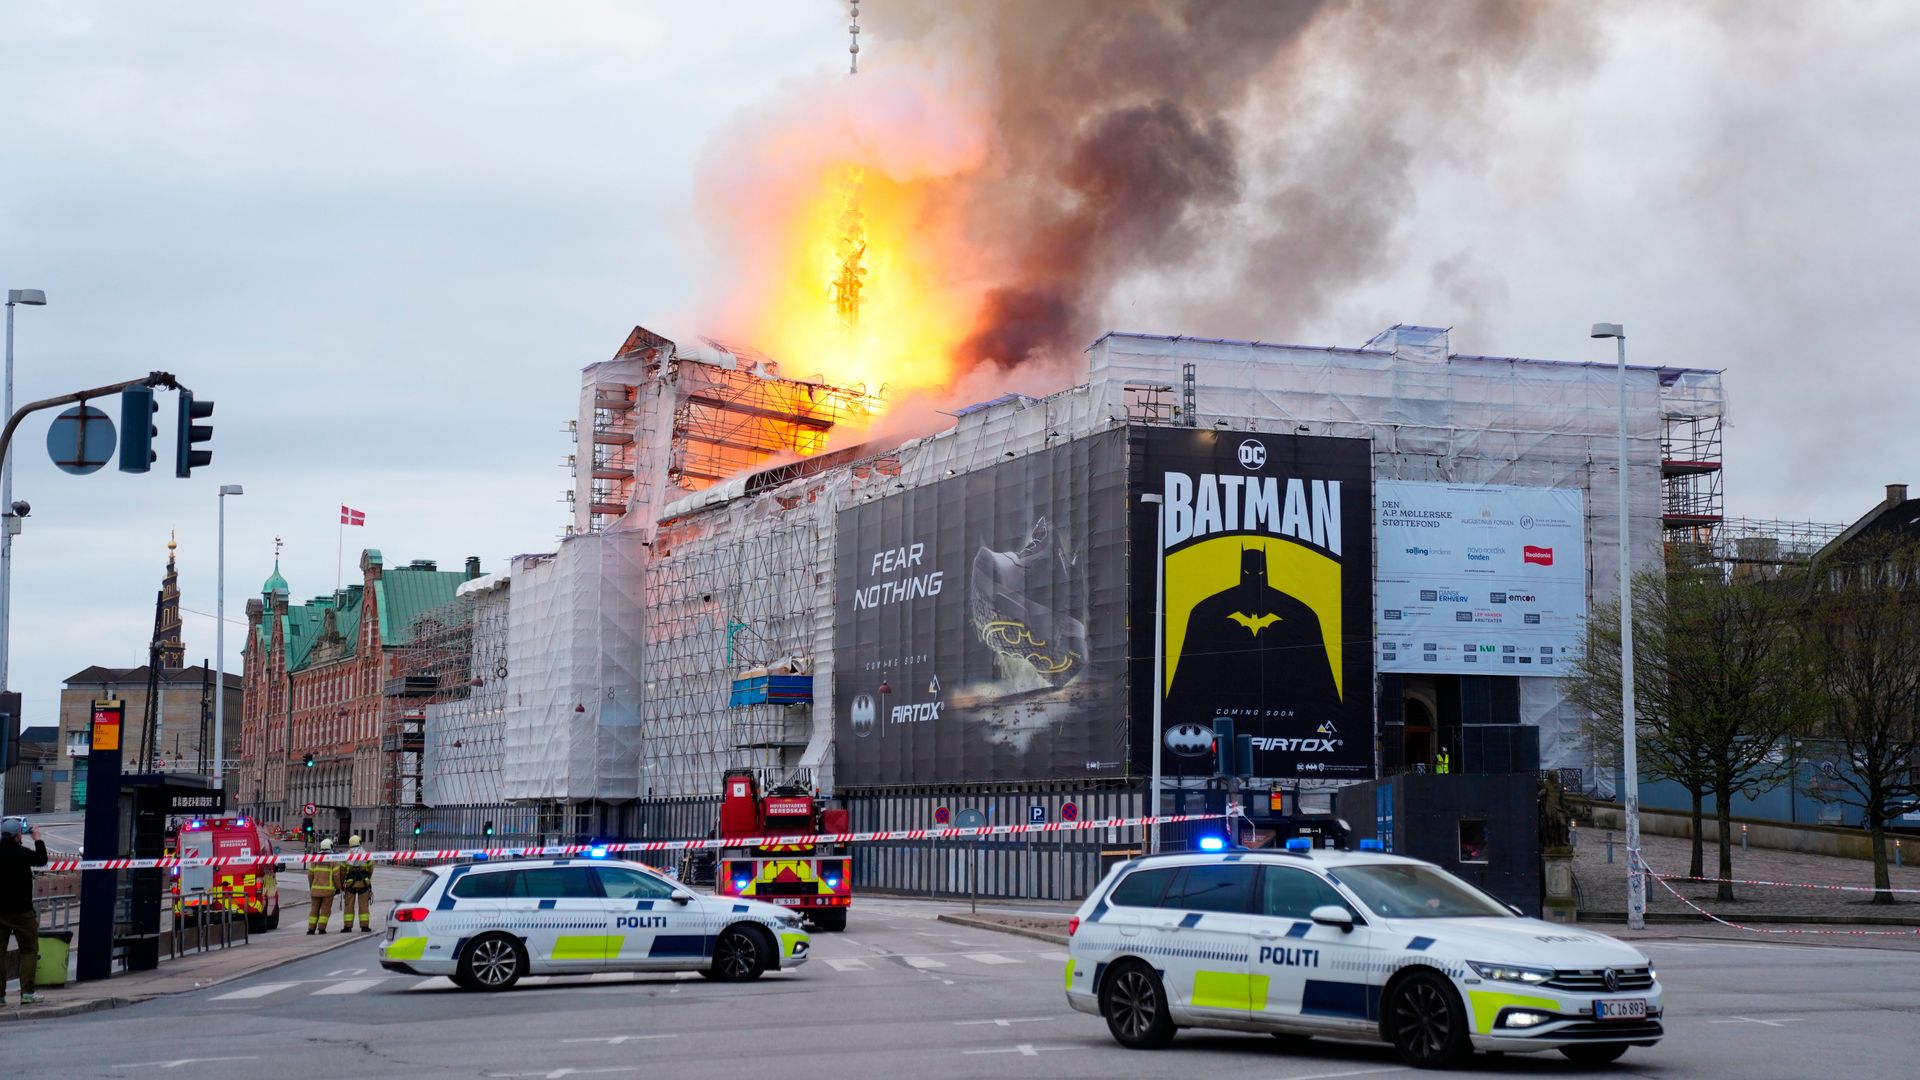 kopenhagen: historische börse steht in flammen